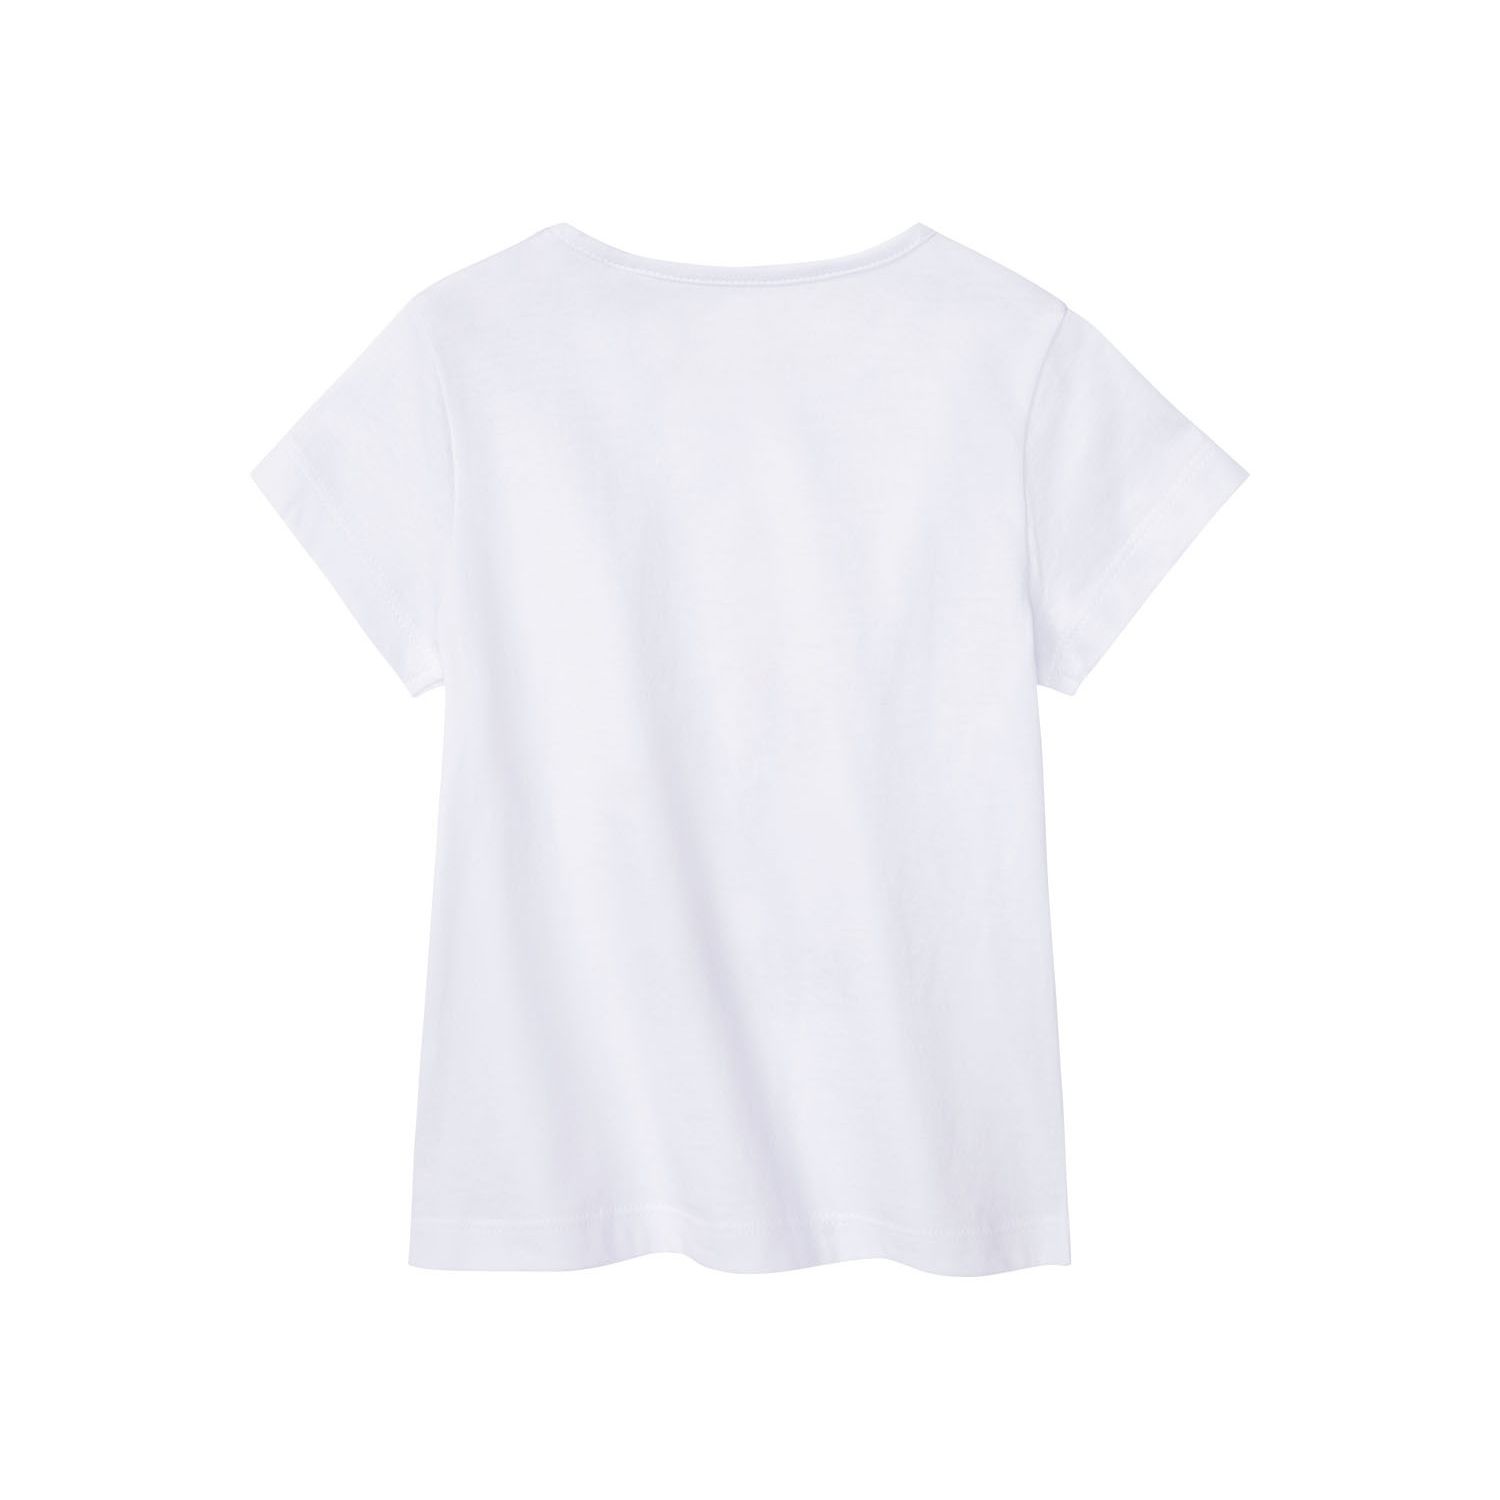 تی شرت آستین کوتاه دخترانه لوپیلو مدل 372237 -  - 2